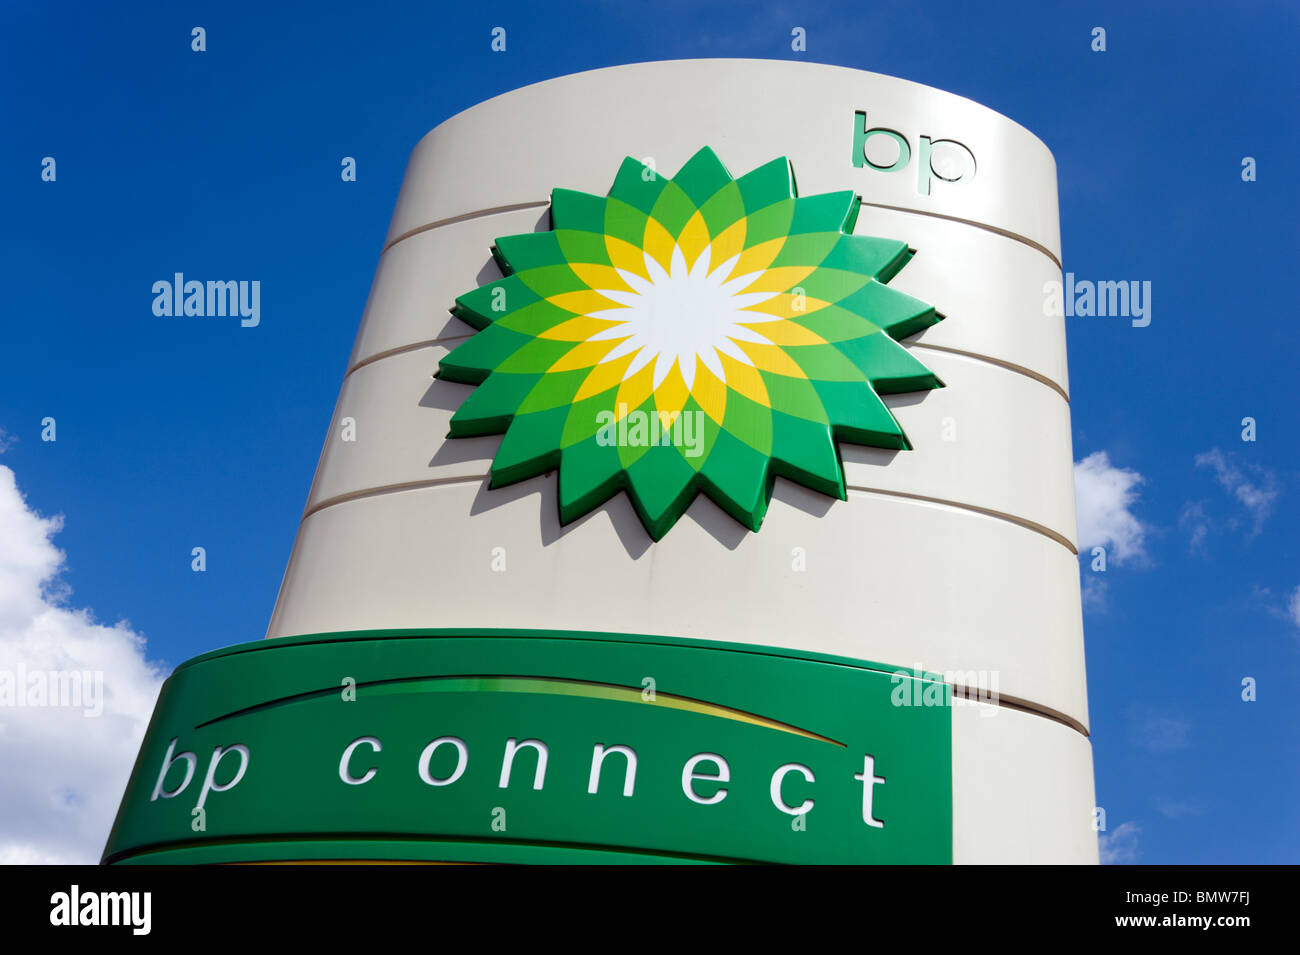 BP petrol station, UK Stock Photo